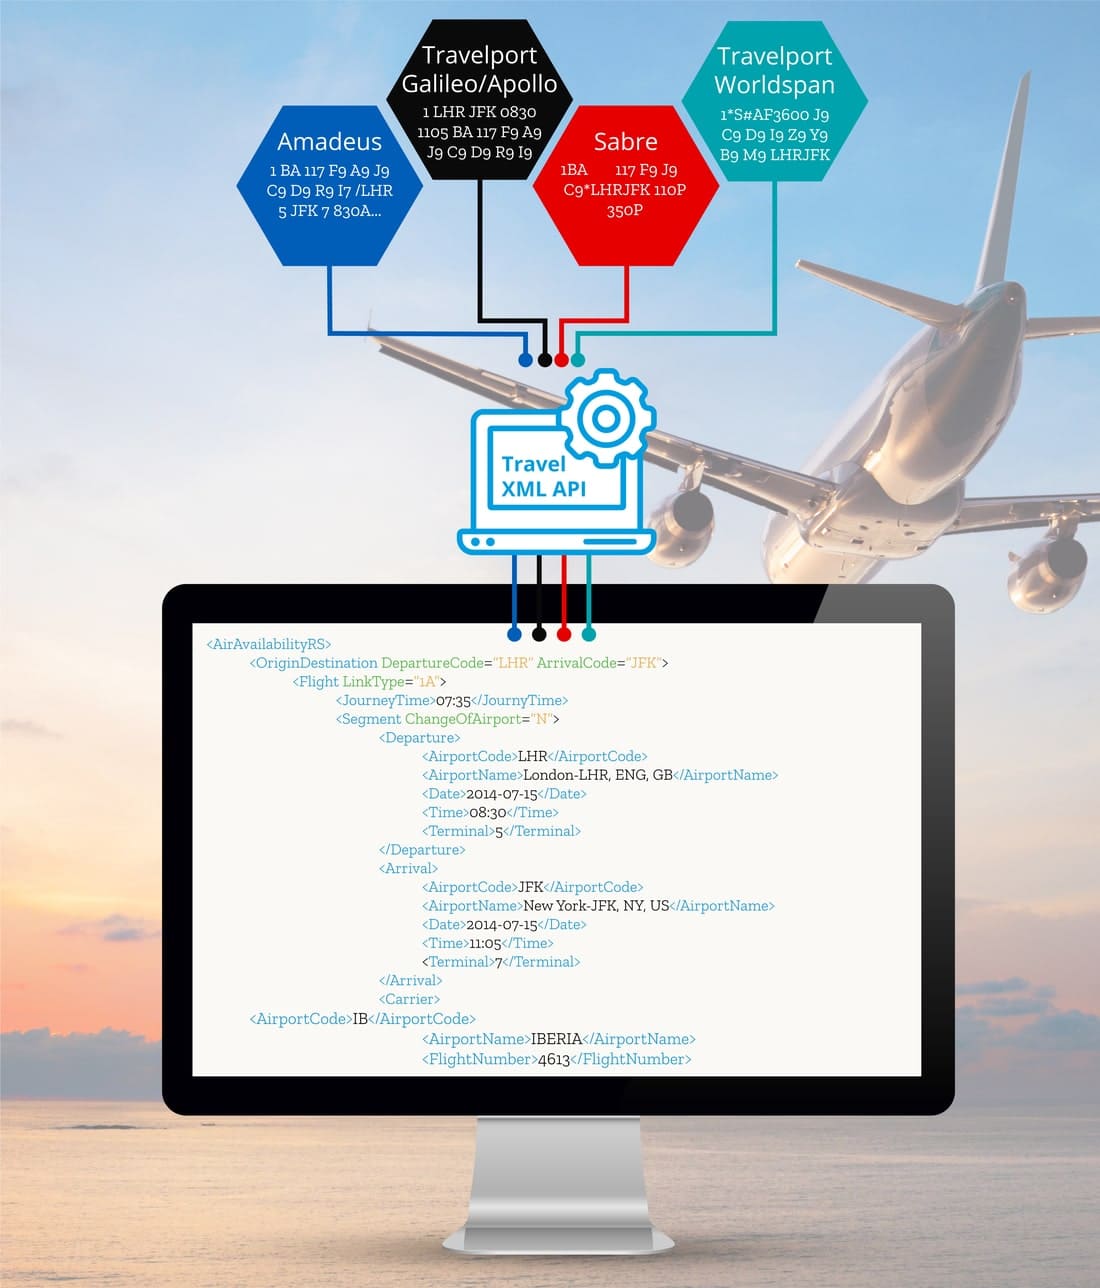 Die Travel XML API ermöglicht die Multi-GDS-Integration von Systemen wie Amadeus, Travelport (Galileo/Apollo, Worldspan) und Sabre via XML